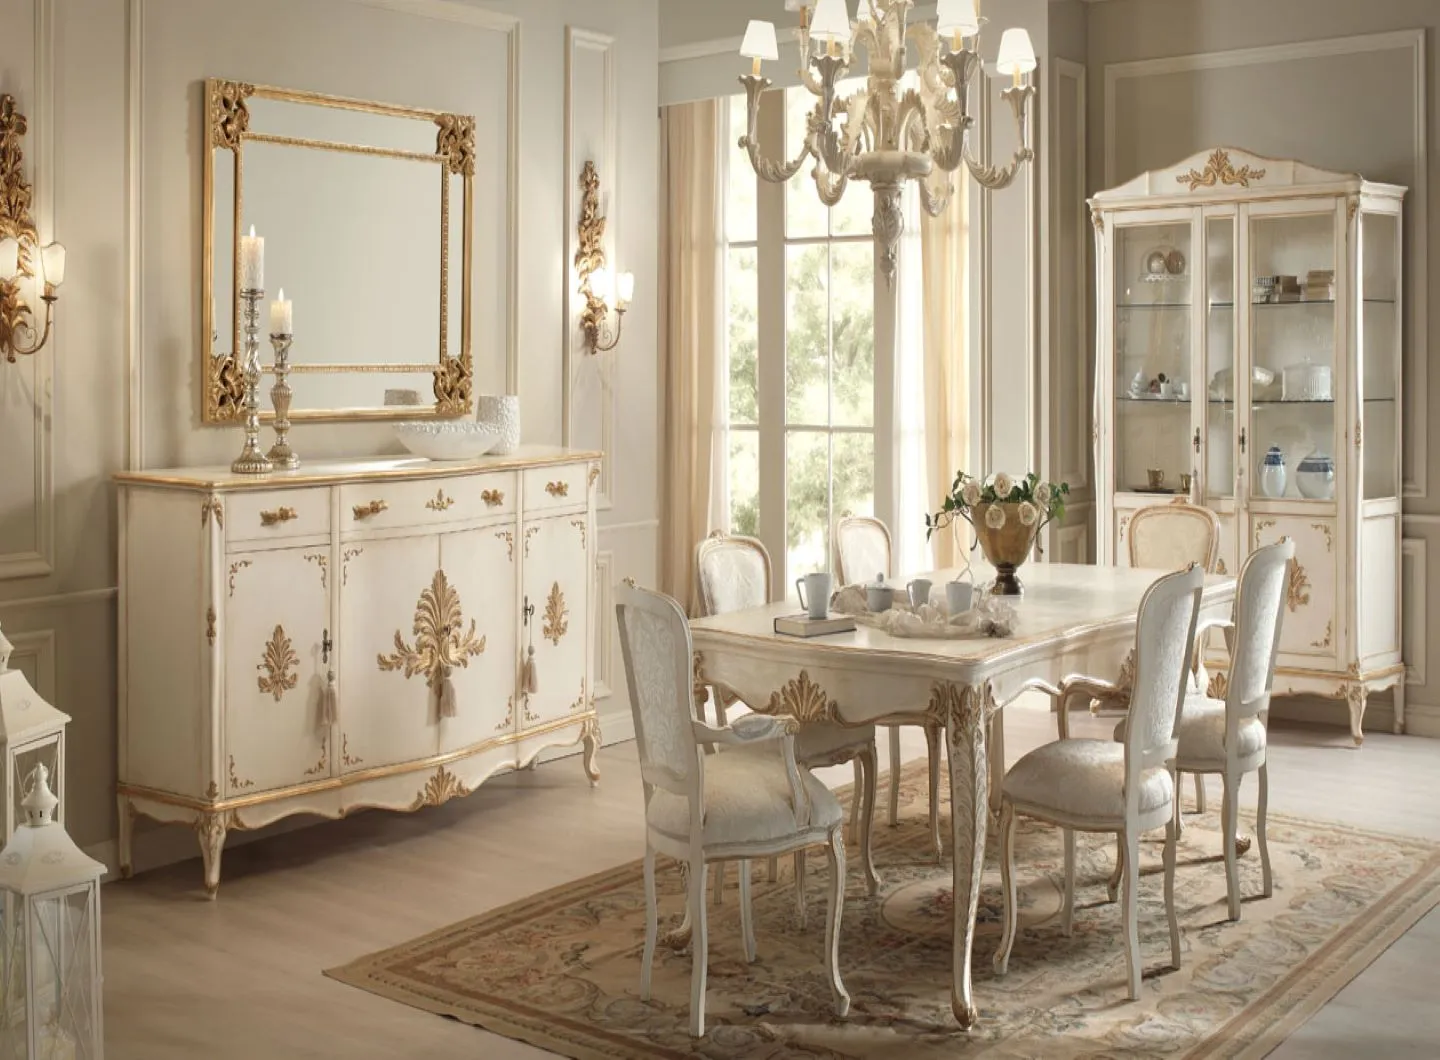 Sala da pranzo "Living Elegantly" con credenza e vetrina abbinati al tavolo